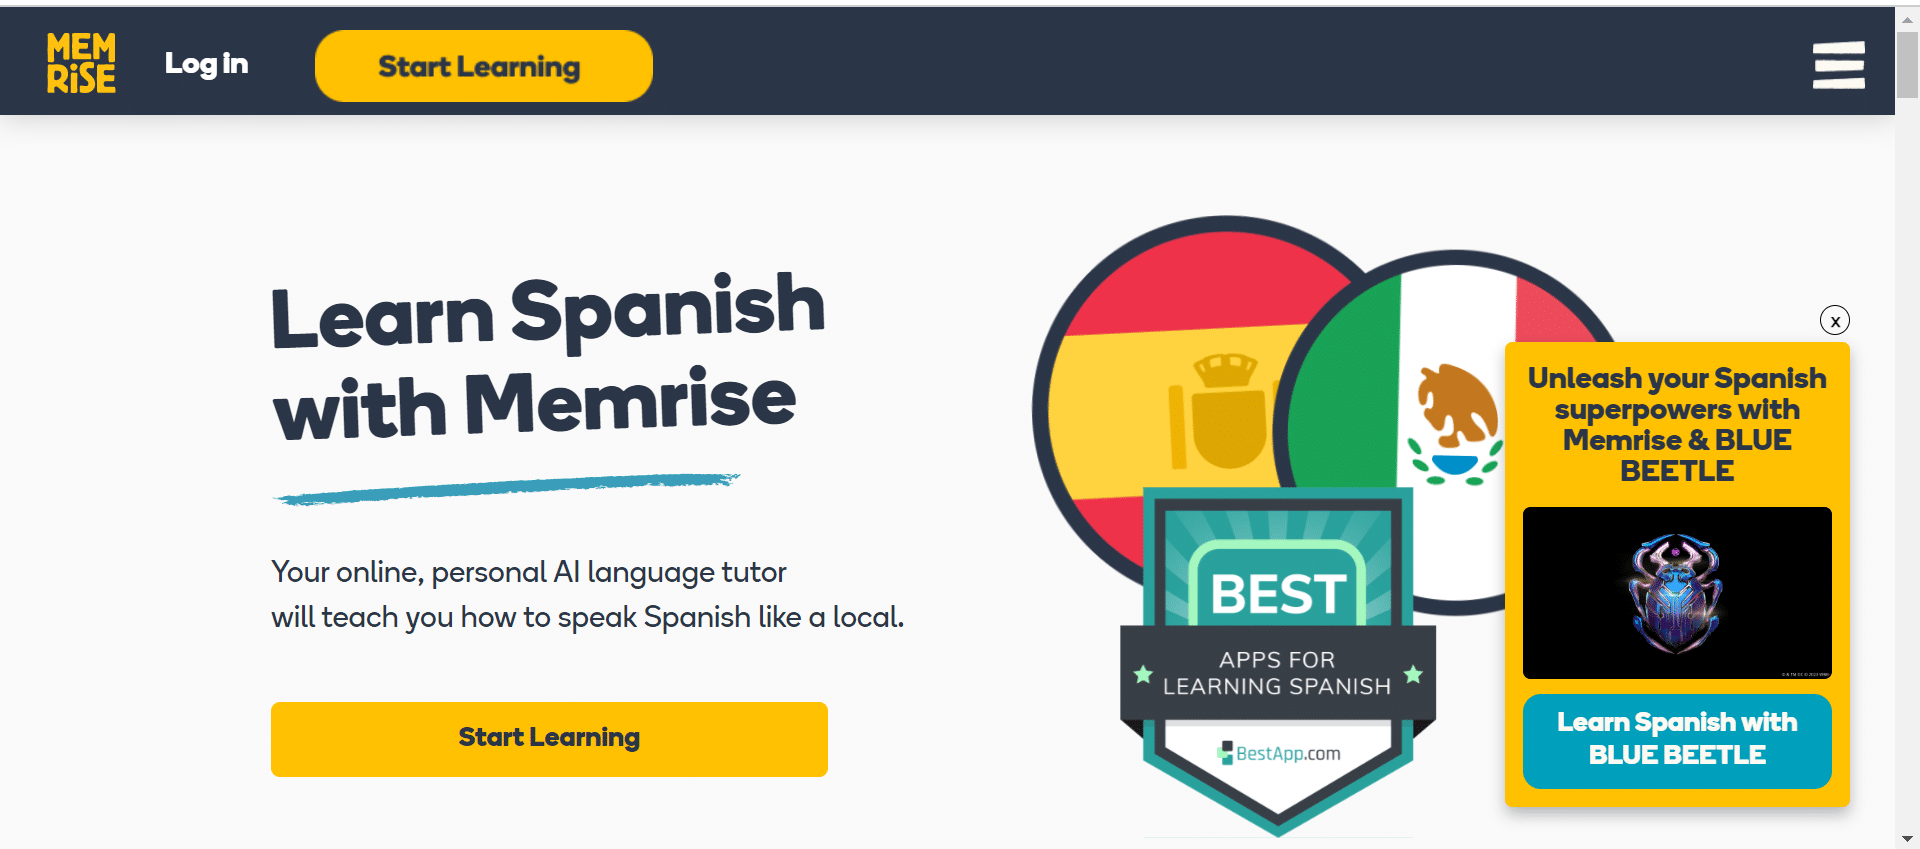 Is Memrise Good for Spanish?